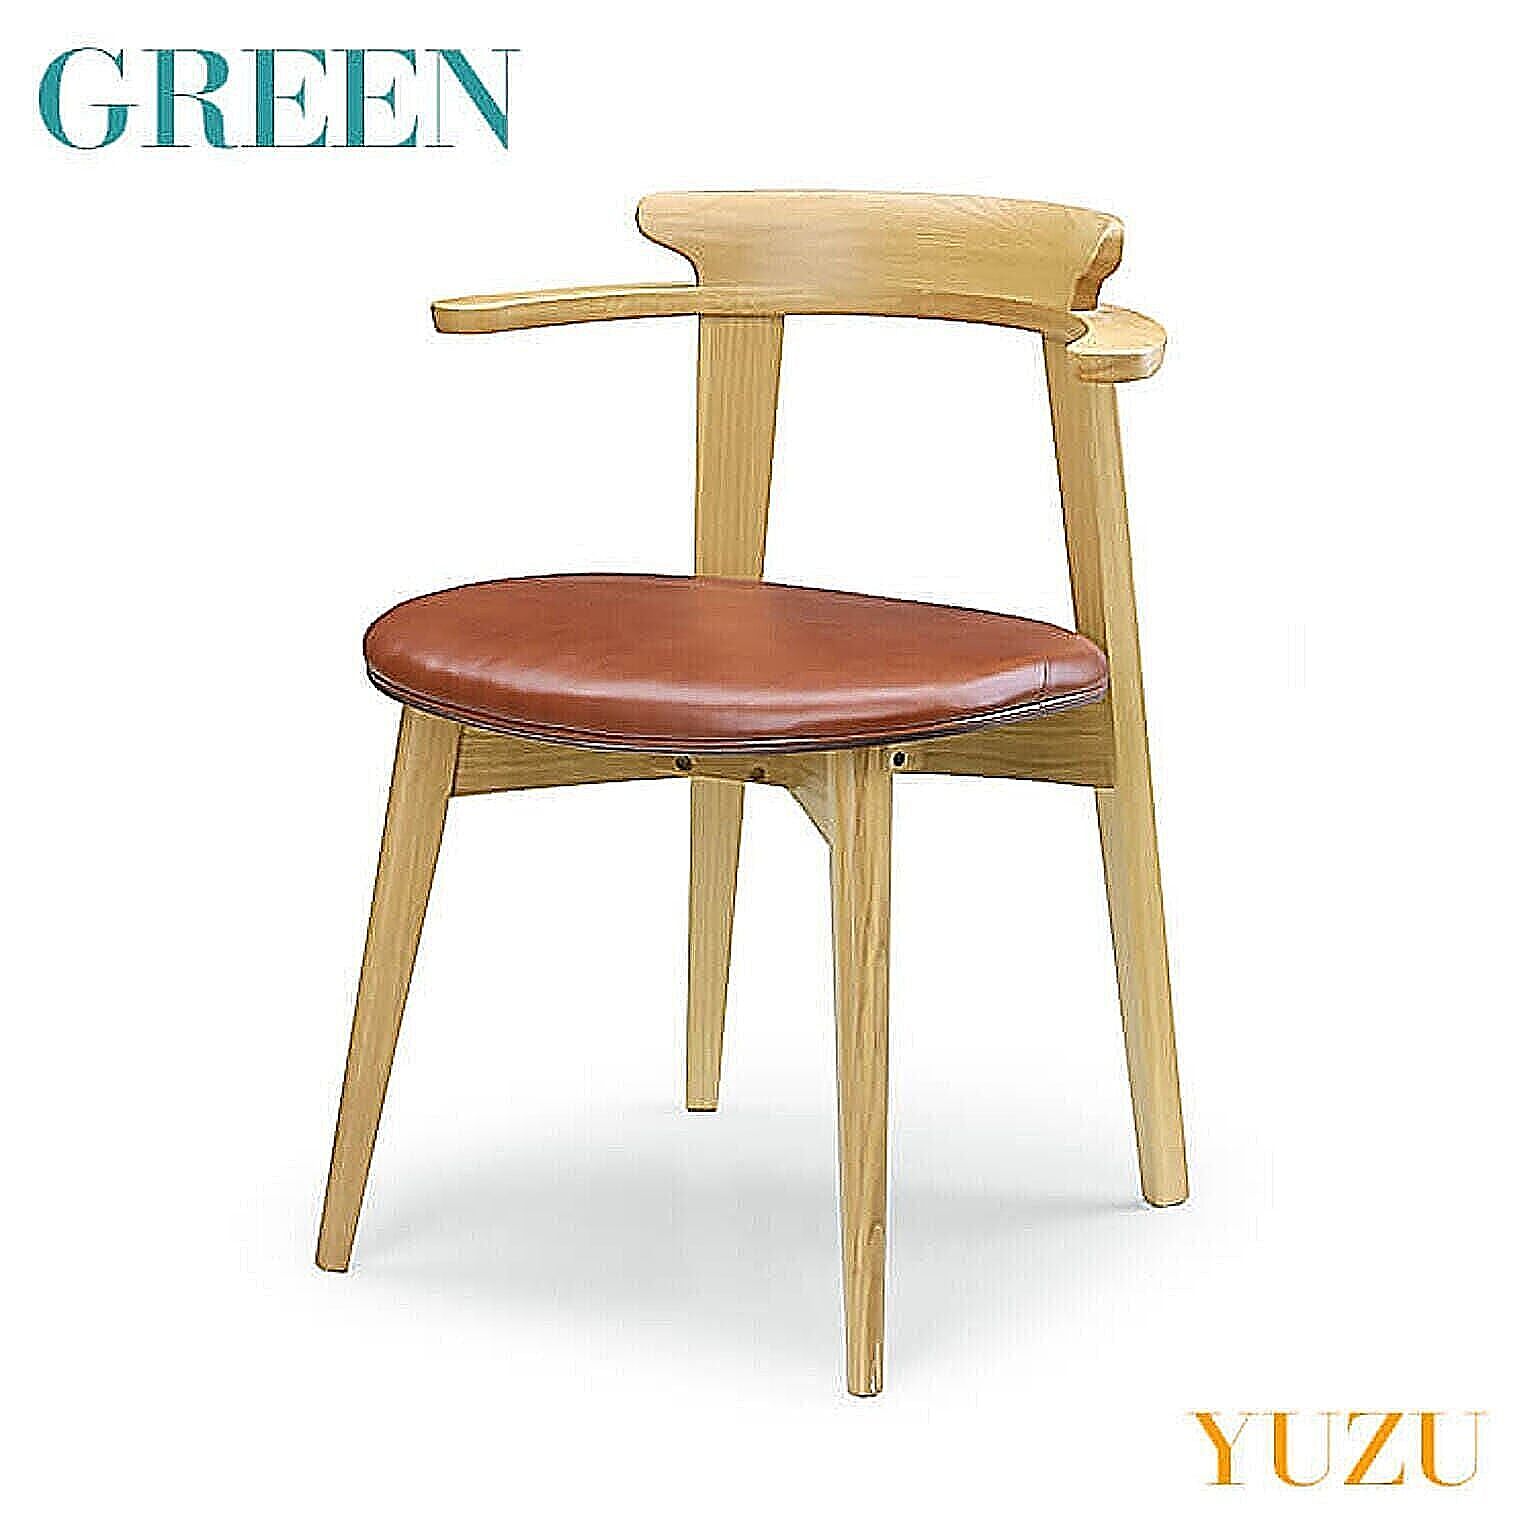 シギヤマ家具工業 GREEN YUZU チェア D オーク Y-002 リビング